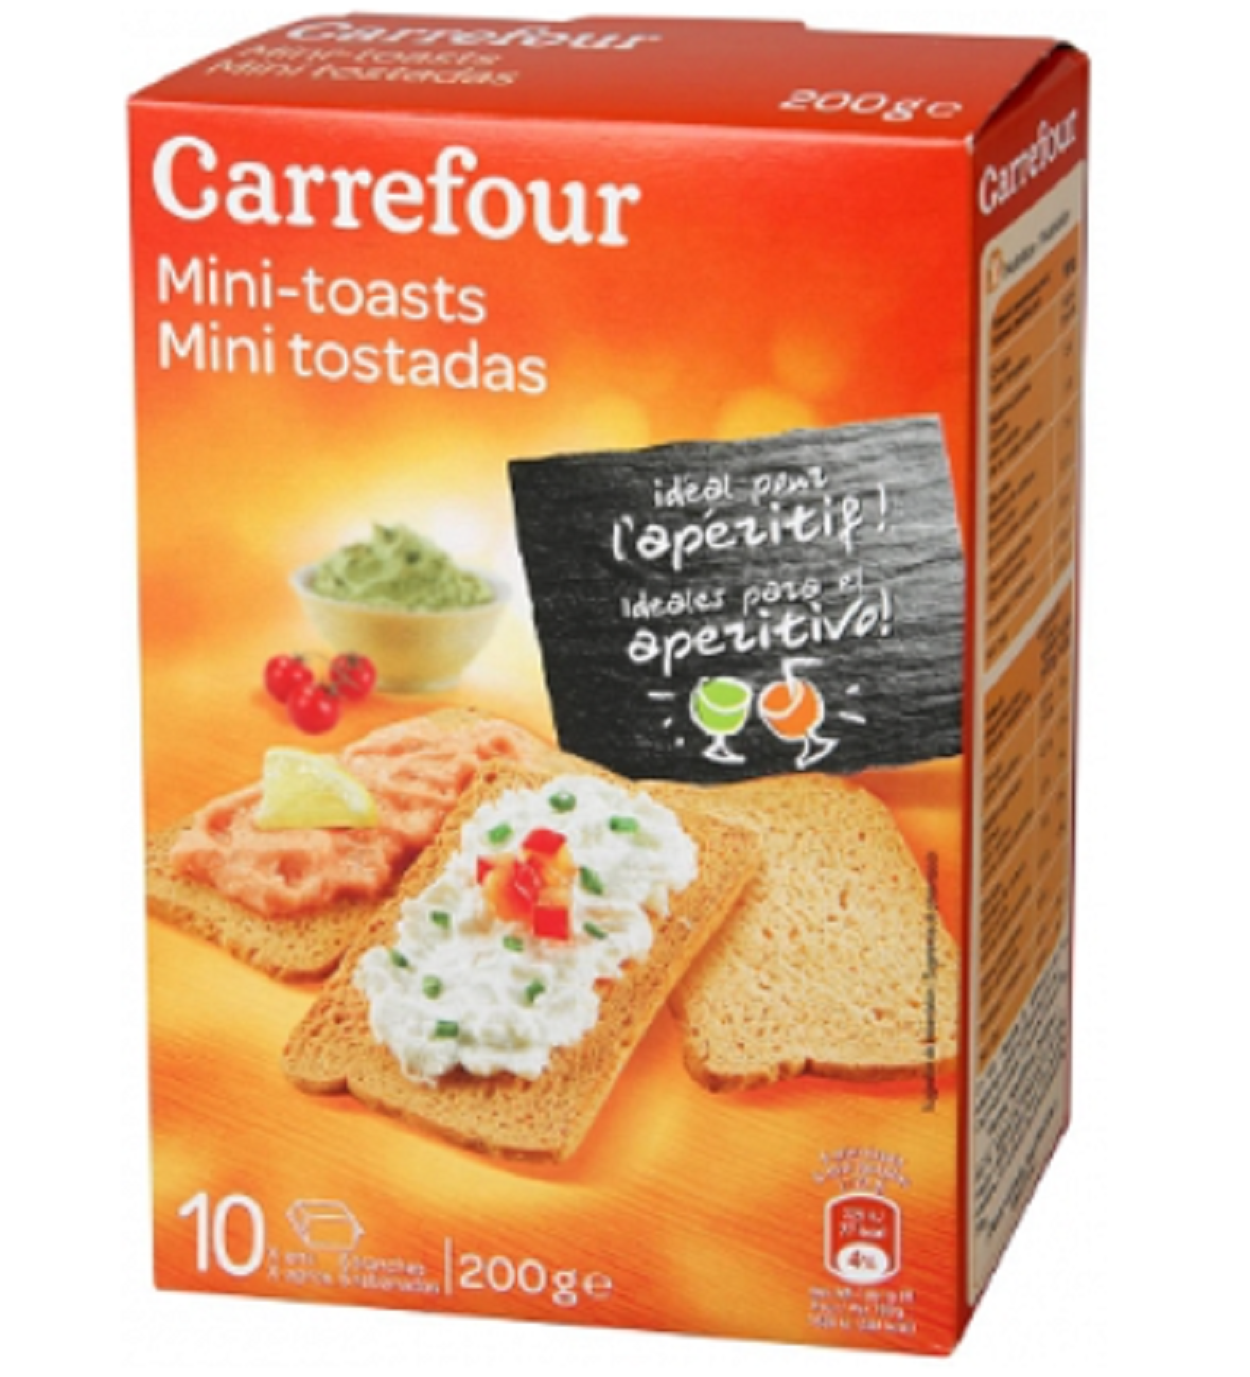 Mini tostadas Carrefour. AESAN